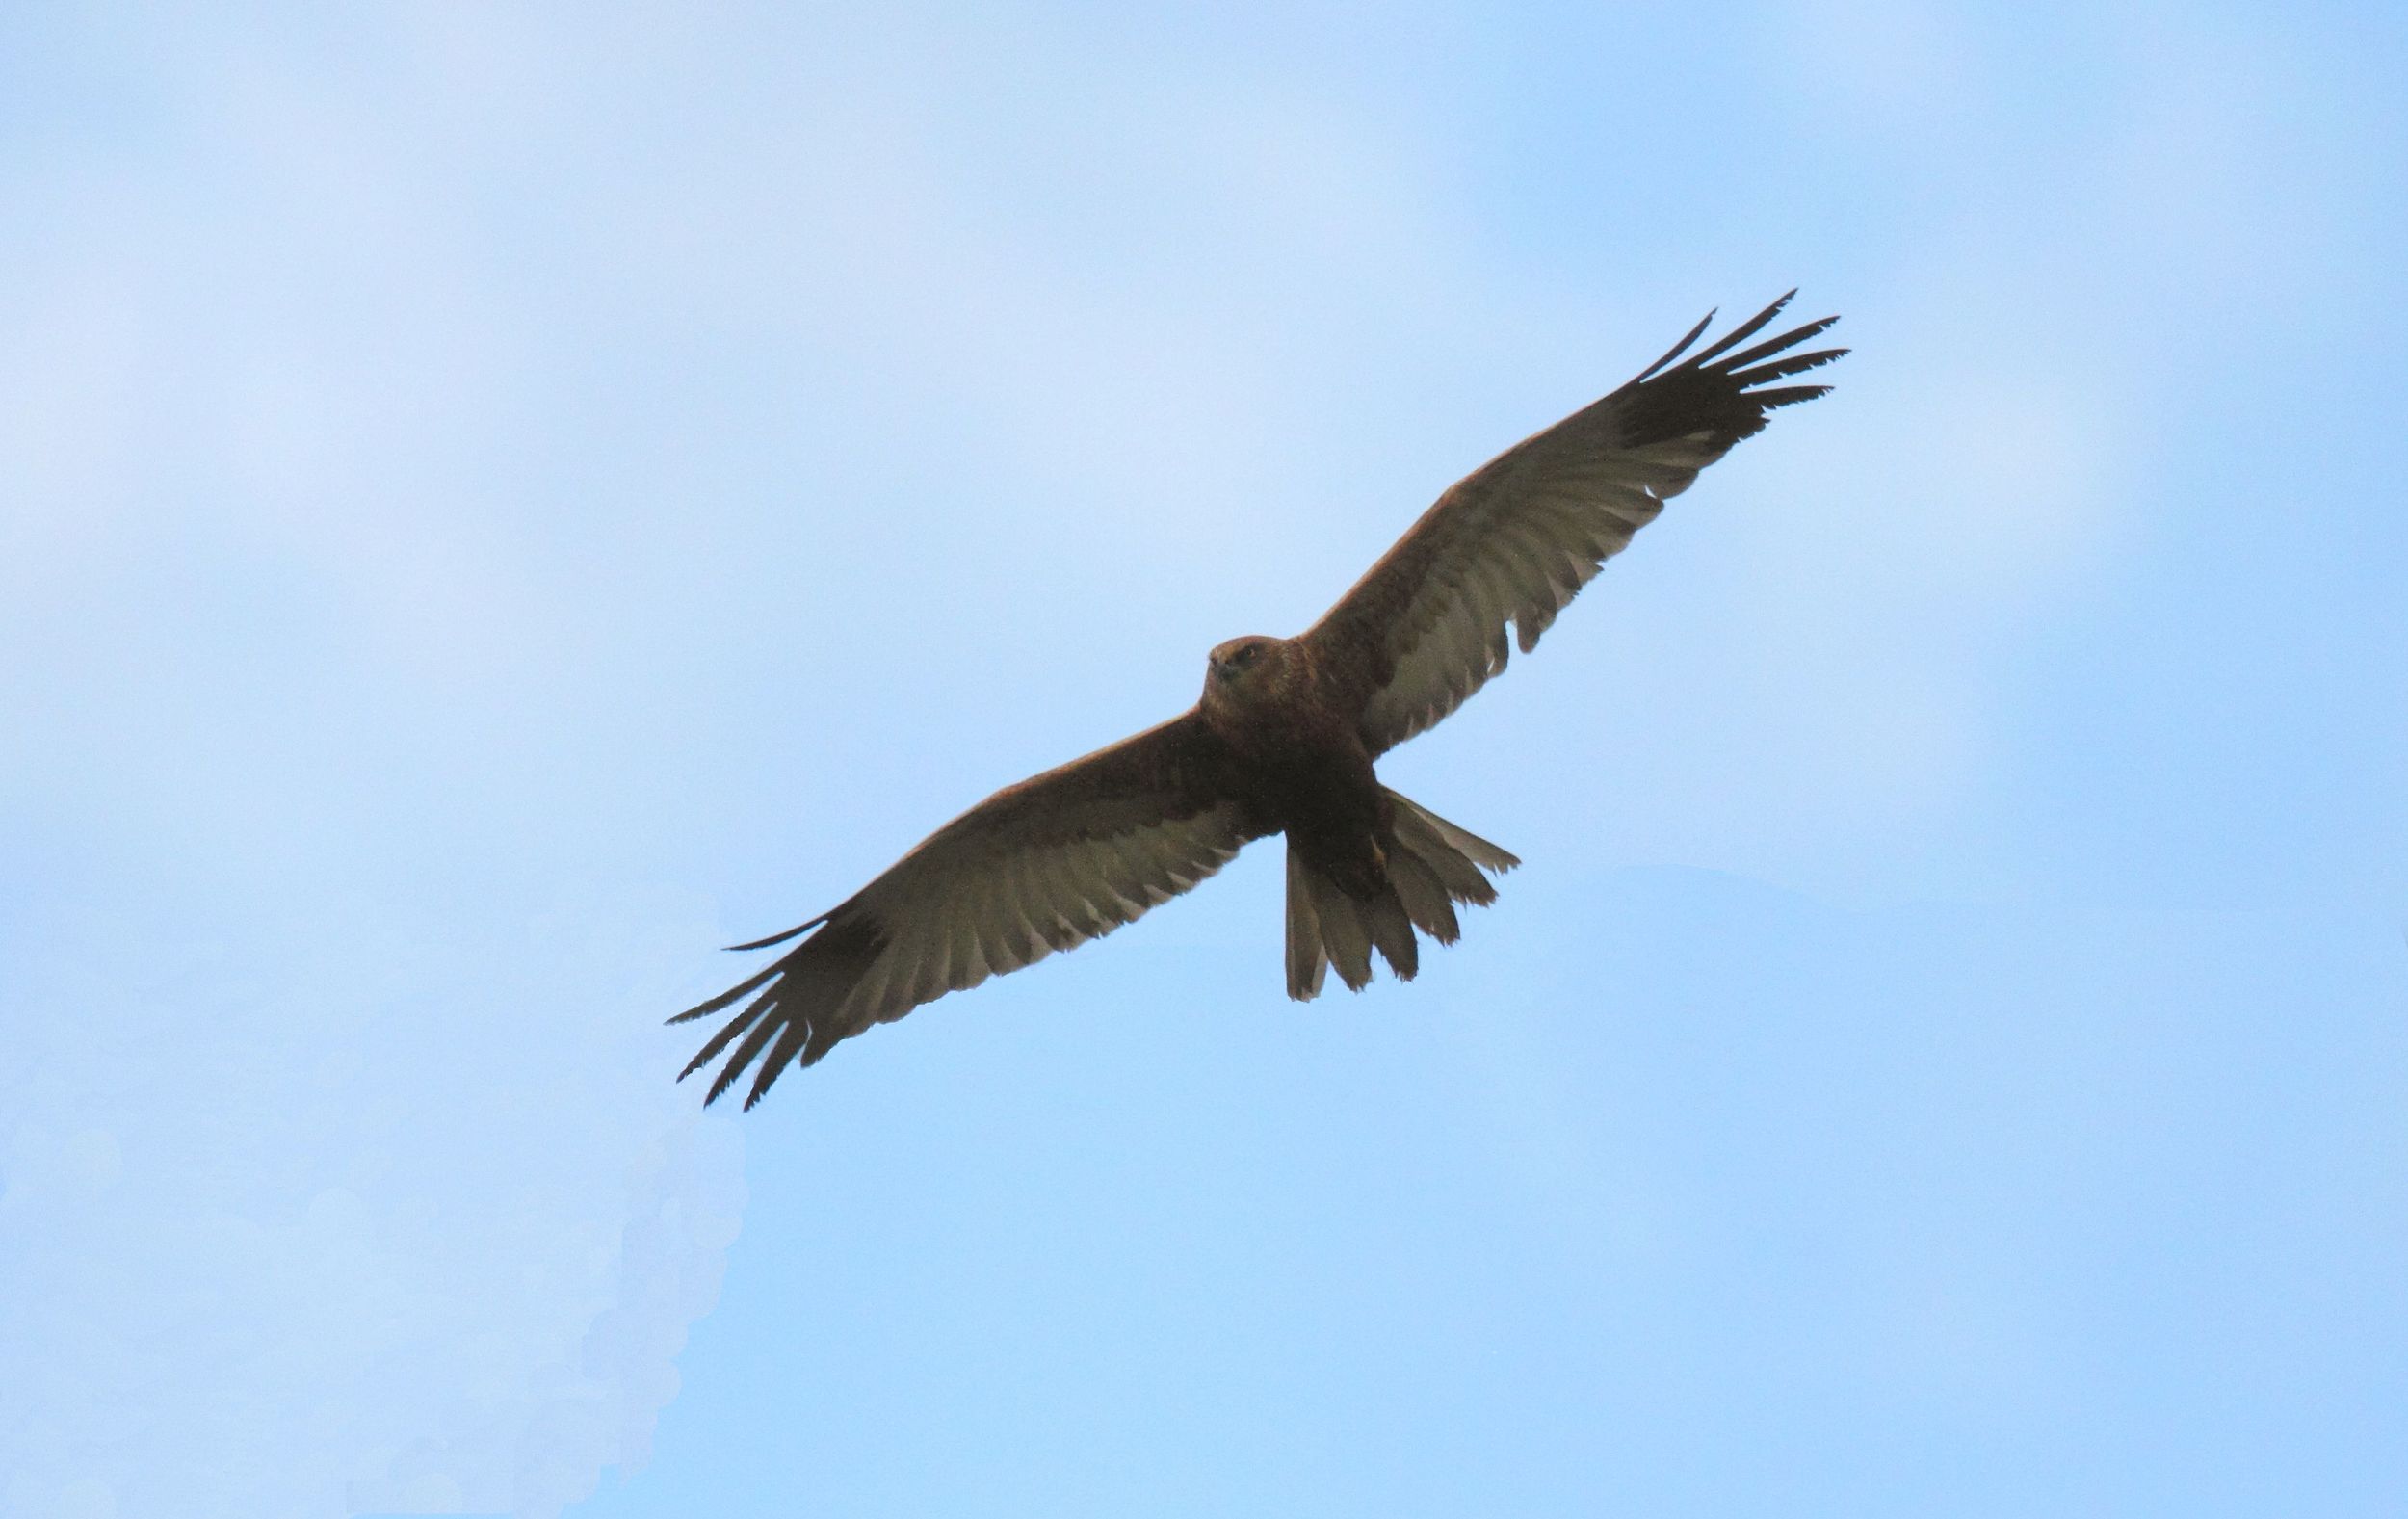 Falco di palude in passagio migratorio nella valle di Trigoria